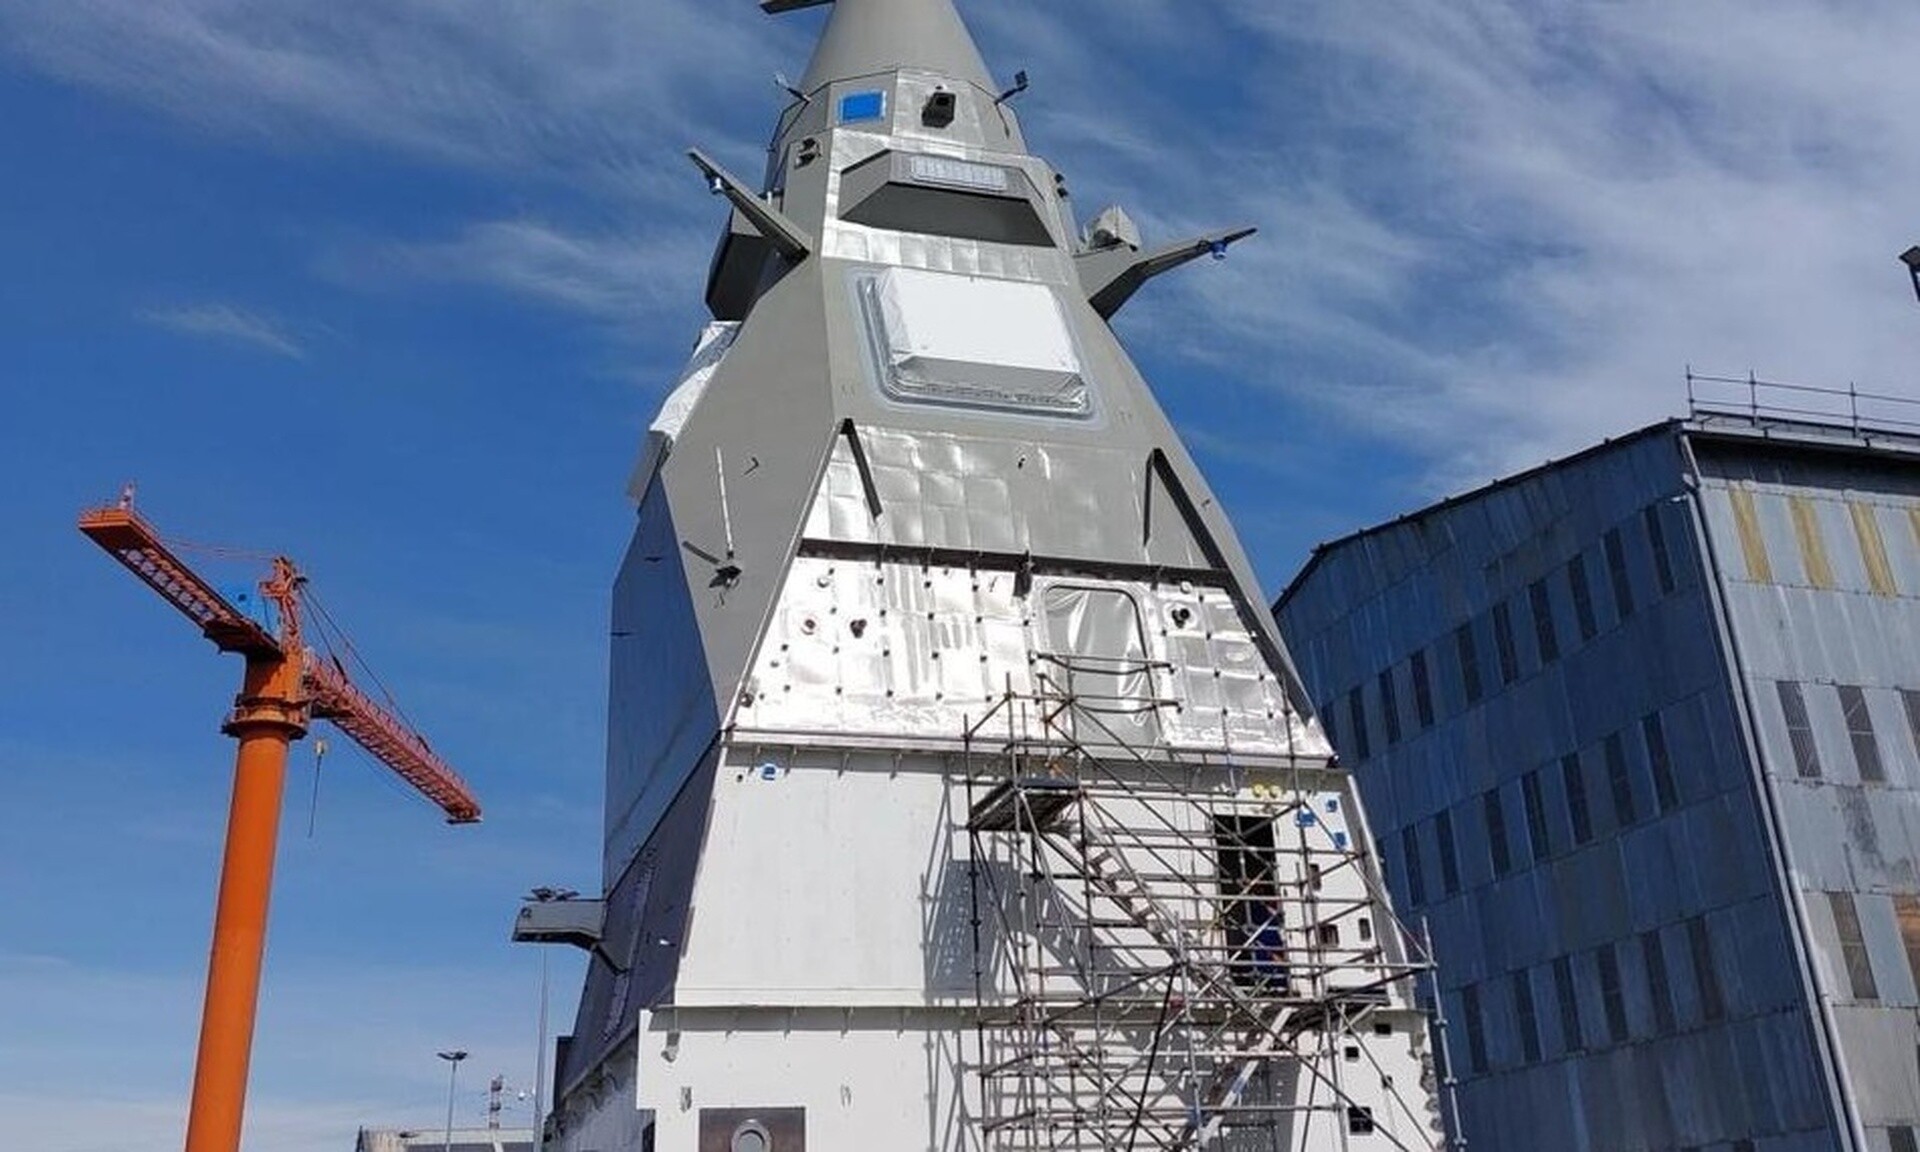 Η Φρεγάτα «Νέαρχος» απέκτησε τον ιστό της - Δείτε εικόνες από τη ναυτική βάση της Γαλλίας